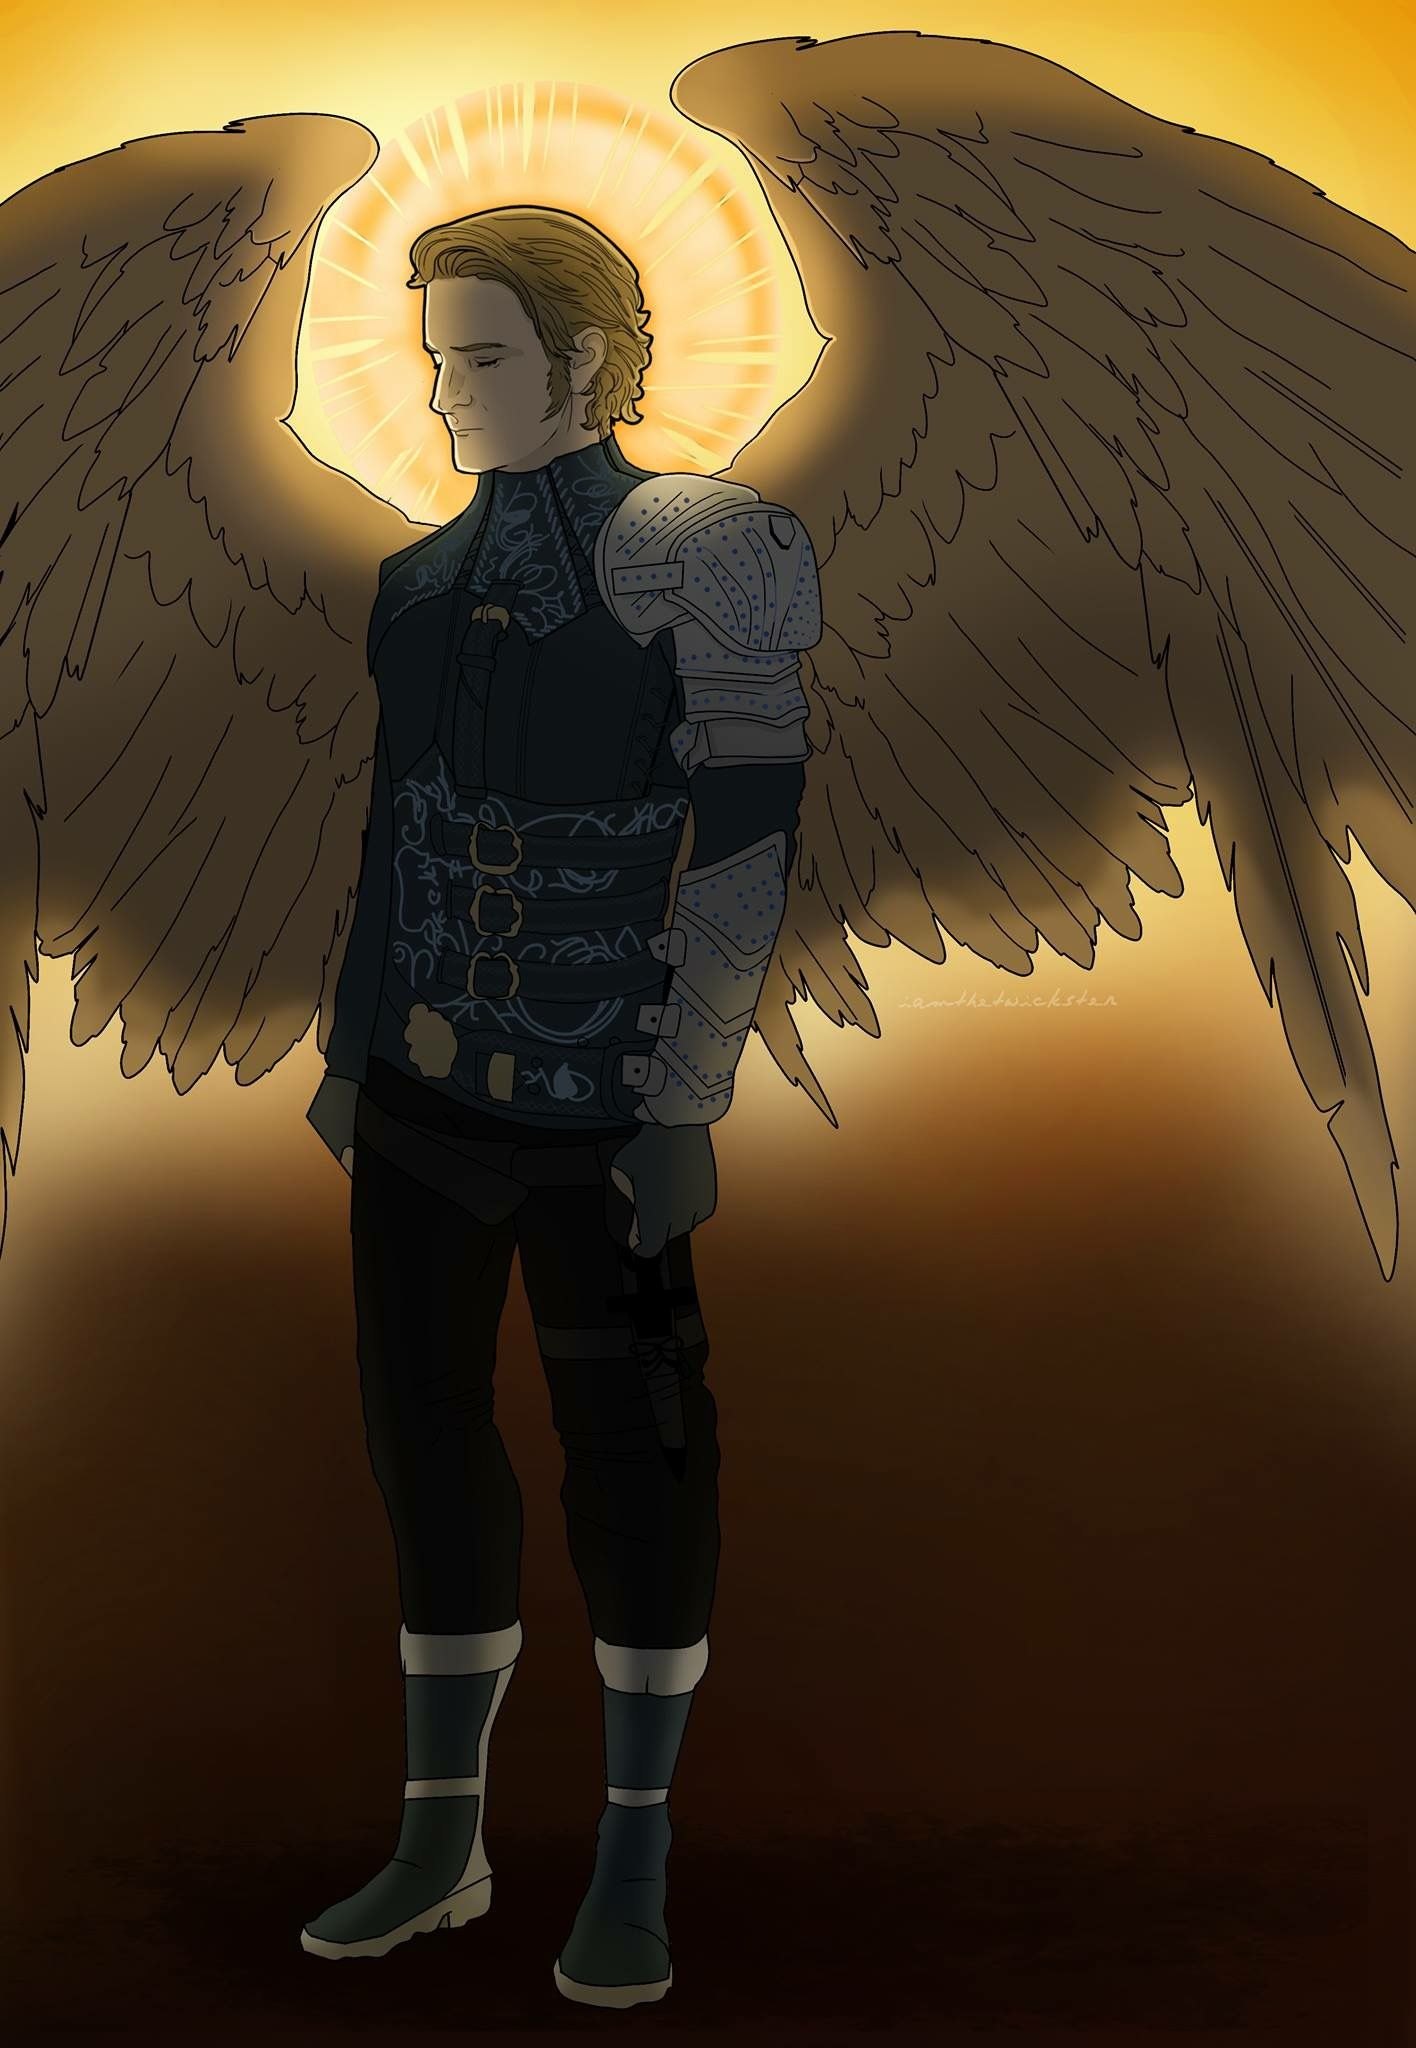 Archangel gabriel. Архангел Габриэль сверхъестественное. Габриэль ангел сверхъестественное.